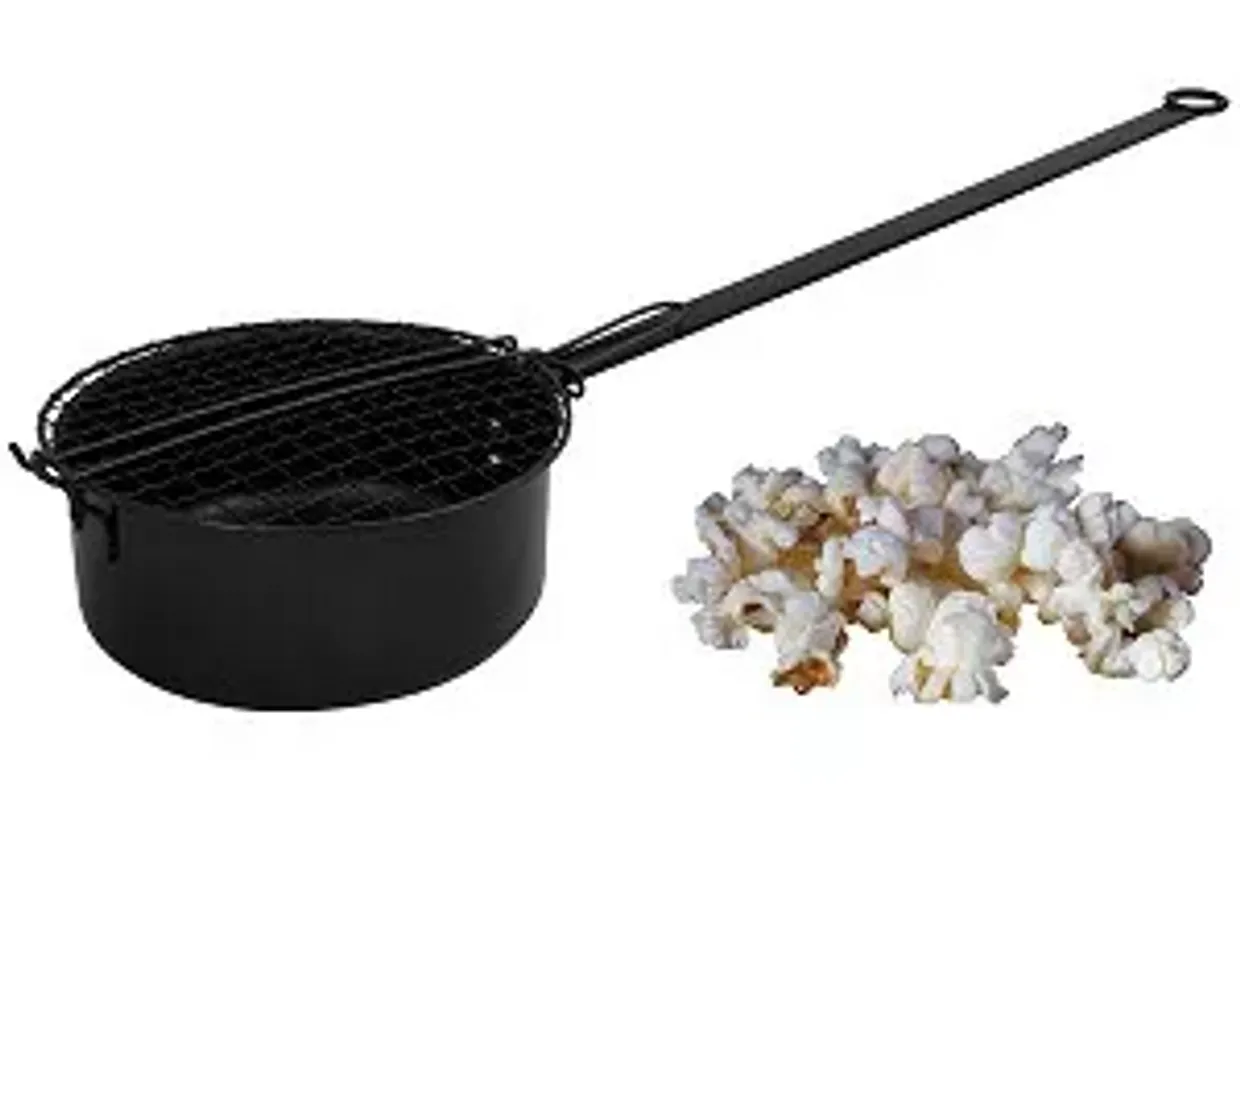 Popcornpan voor barbecue